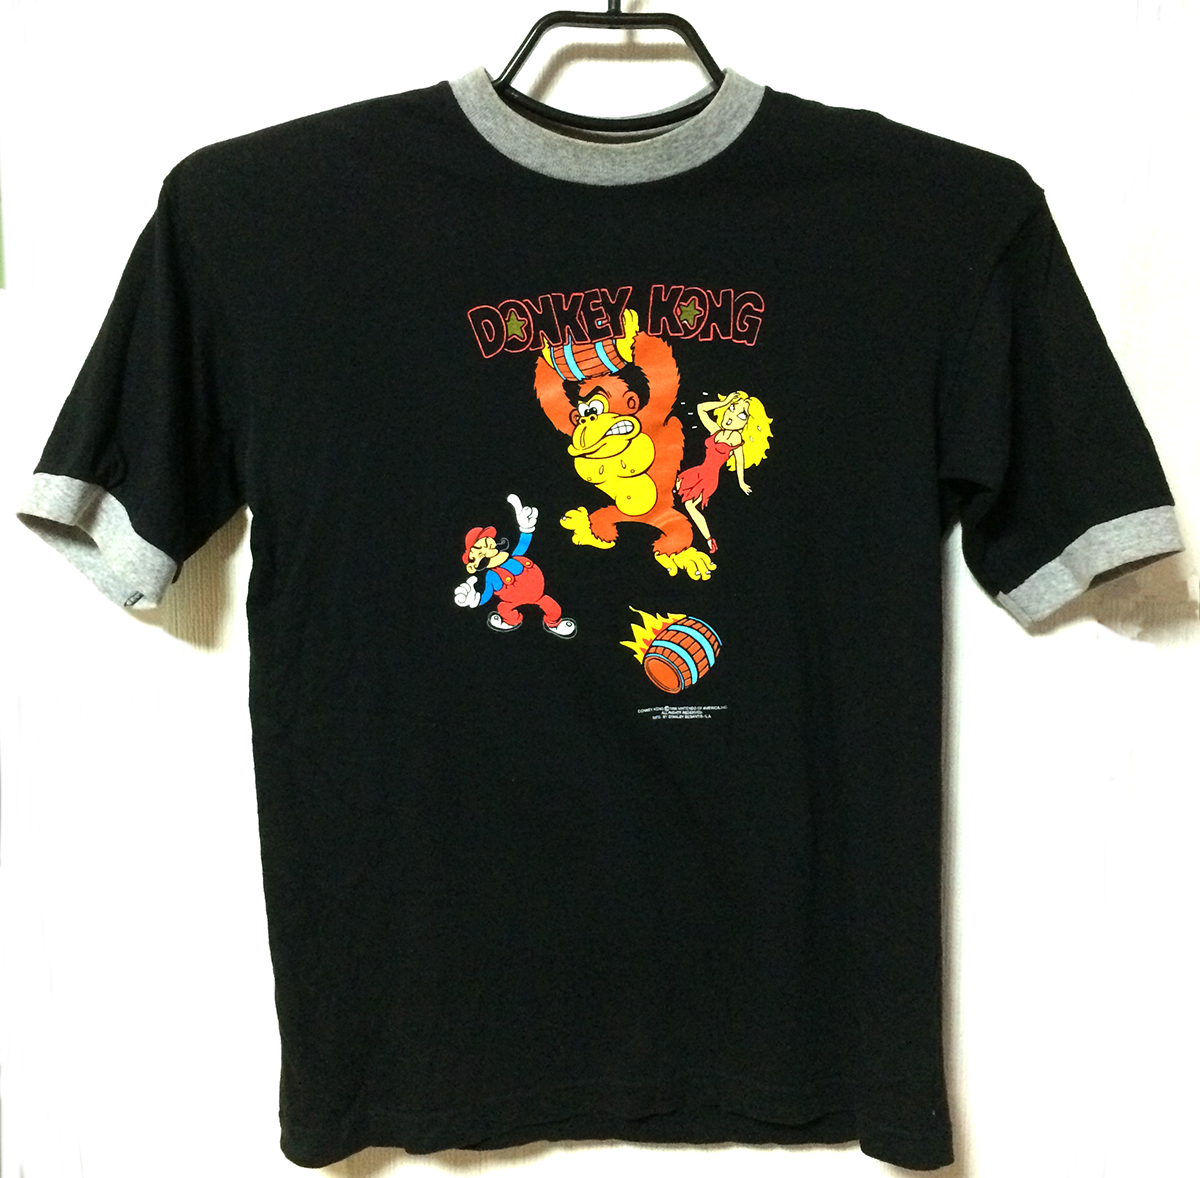 任天堂「ドンキーコング」Tシャツ(1)/Nintendo "Donkey Kong" T-shirts